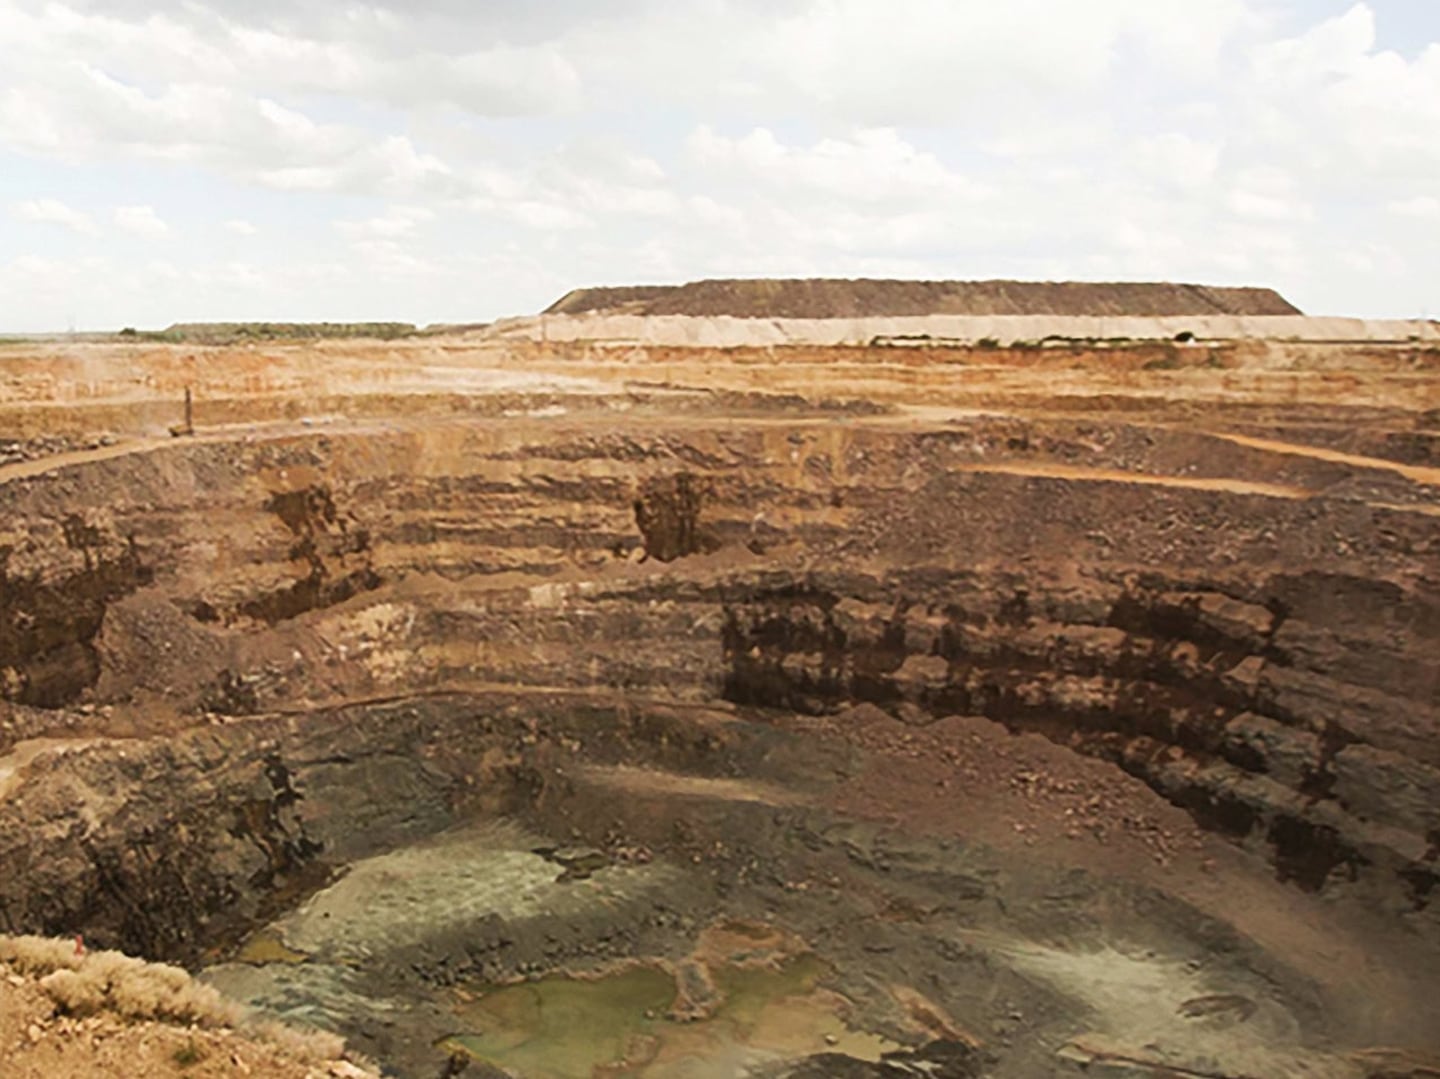 De Beers' diamond mines | Source: De Beers